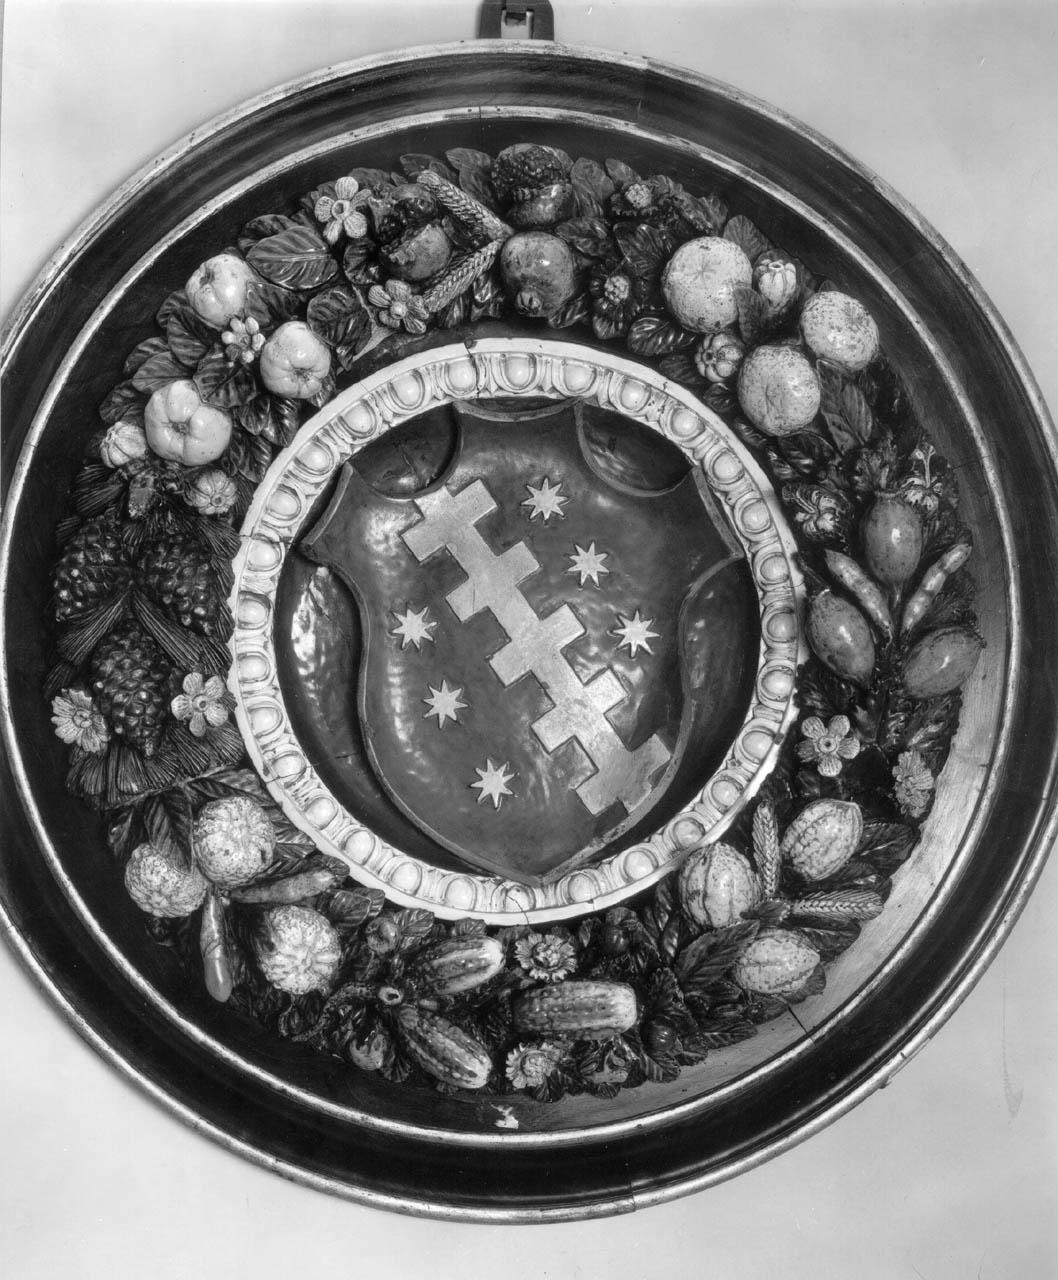 stemma gentilizio della famiglia Aldobrandini (rilievo) - manifattura fiorentina (fine/ inizio secc. XV/ XVI)